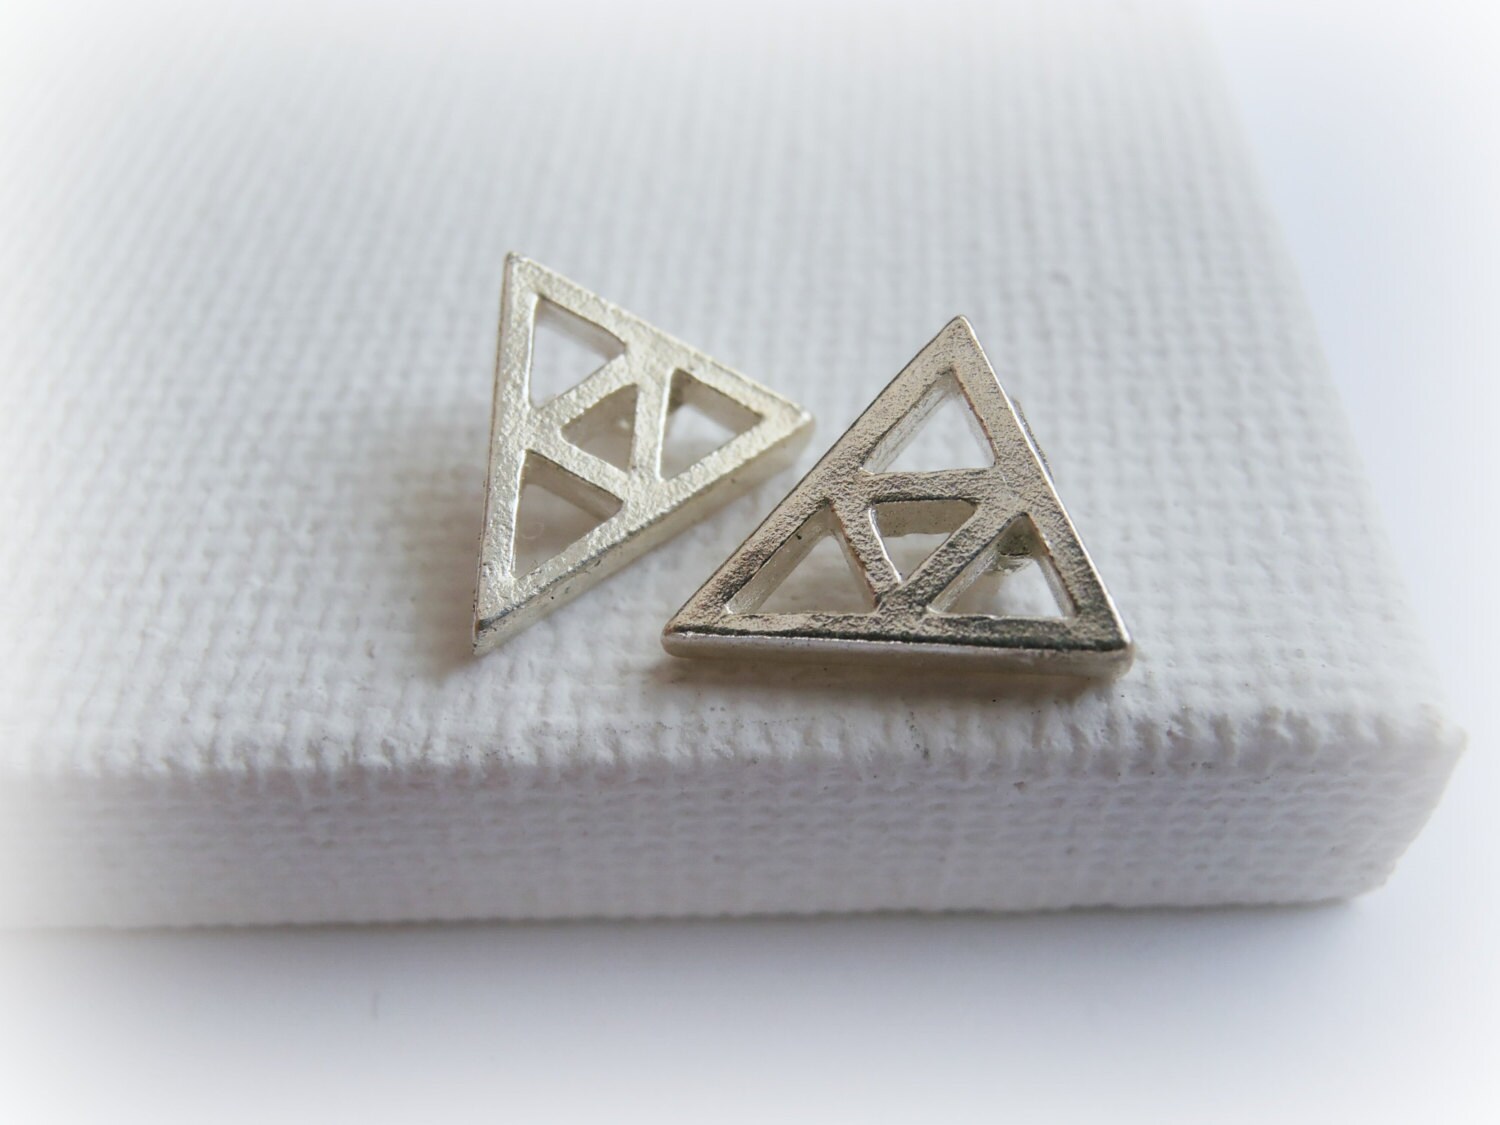 Legend of Zelda Triforce Earrings Trianlge silver studs | Etsy